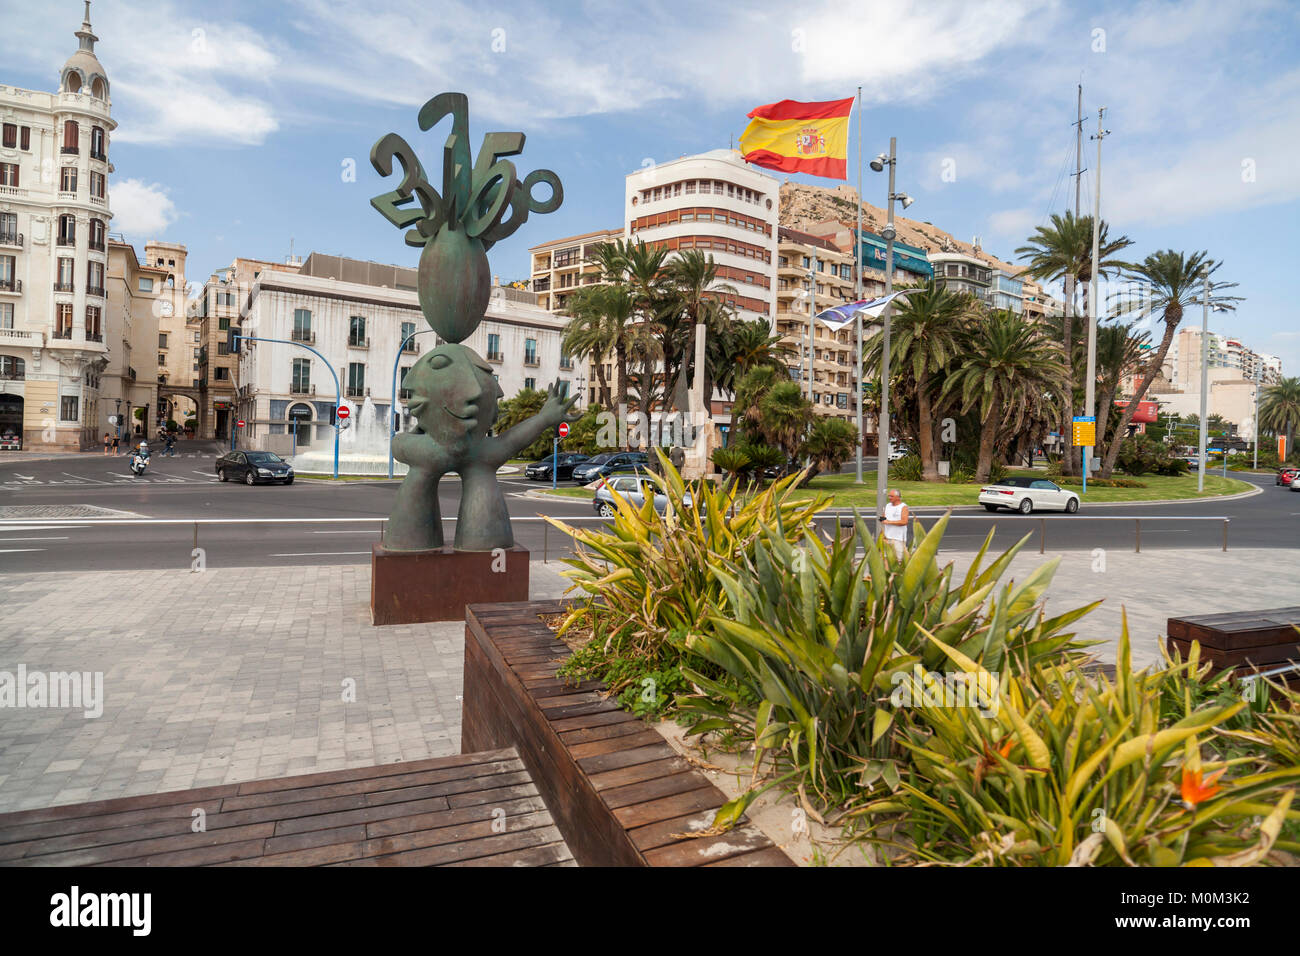 City view, square, Plaza Puerta del Mar,Alicante,Spain Stock Photo - Alamy